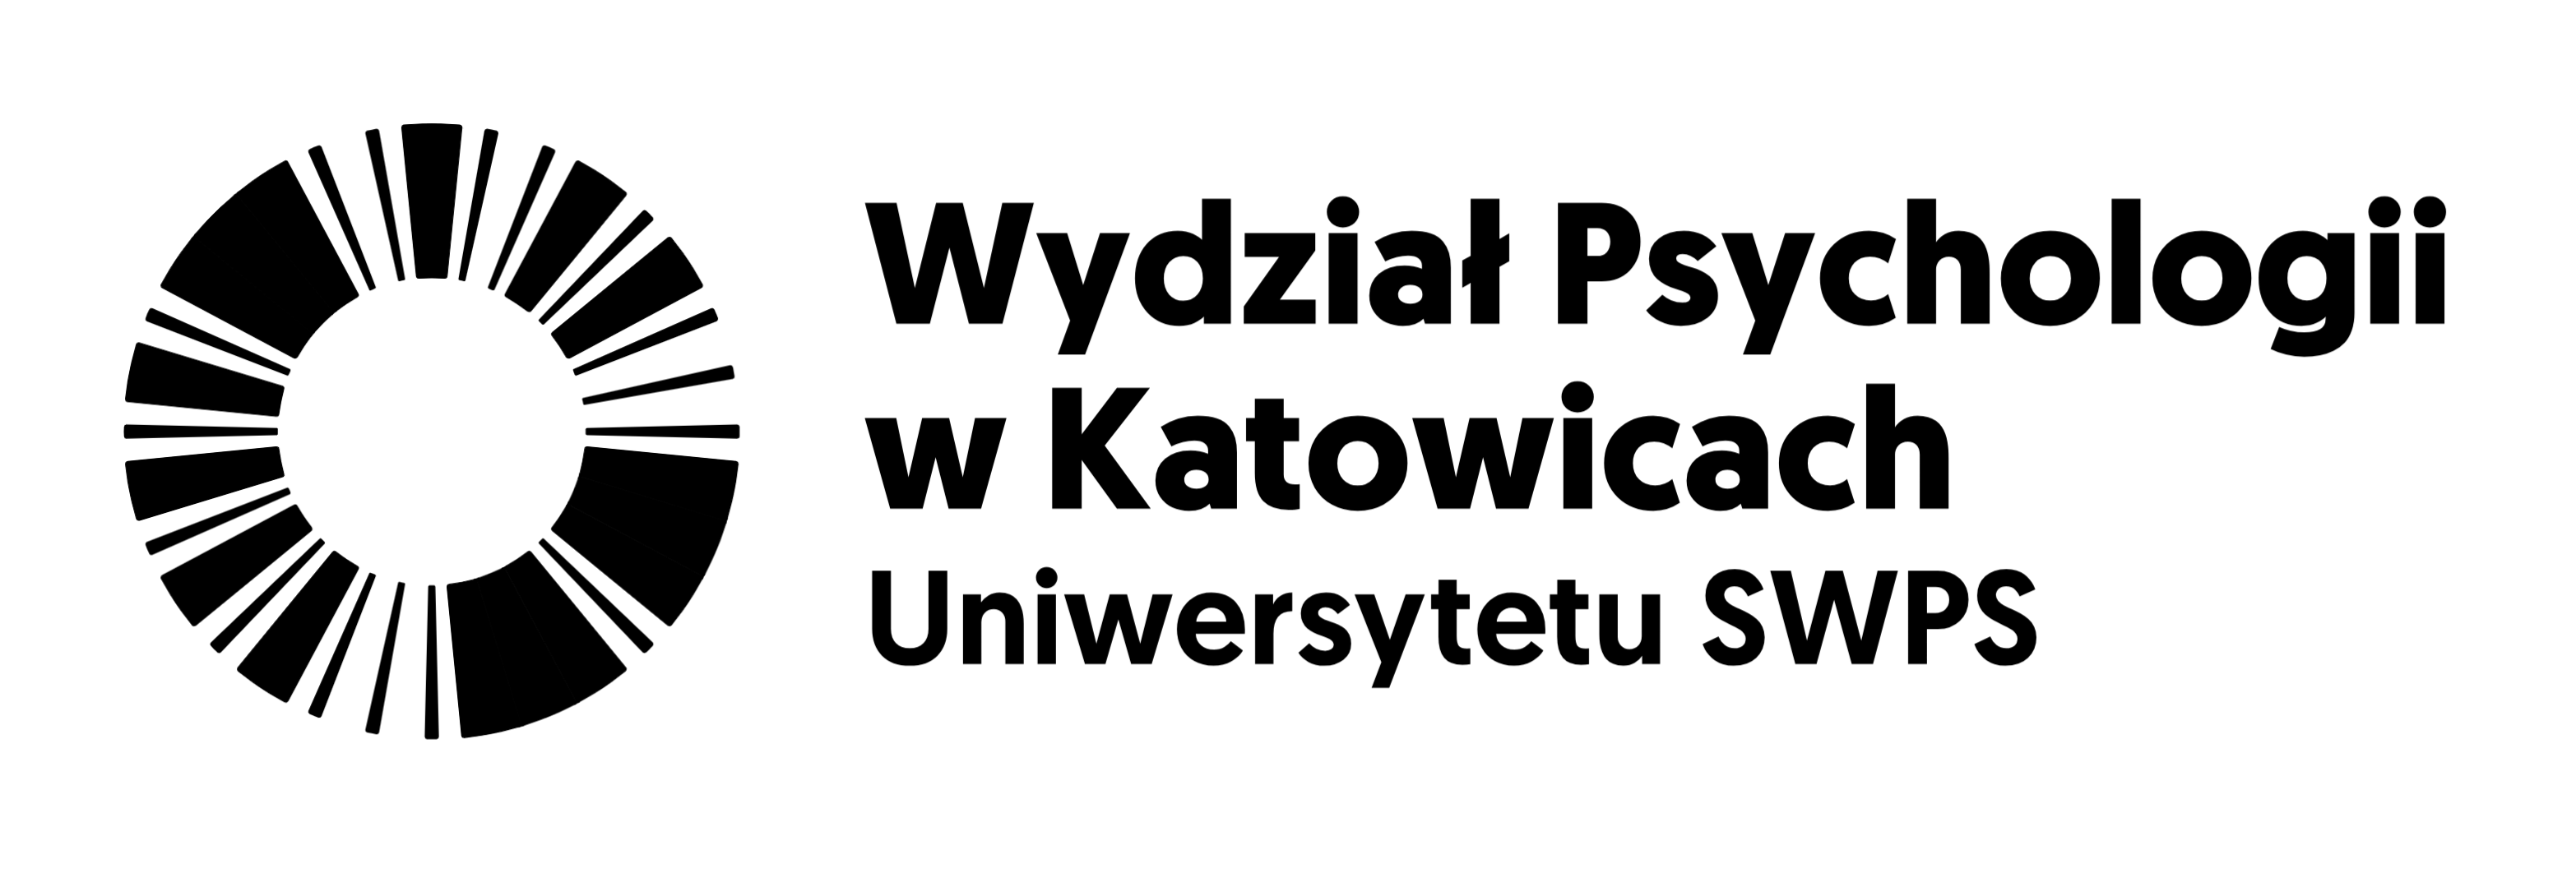 Wydział Psychologii w Katowicach, Uniwersytet SWPS, logo